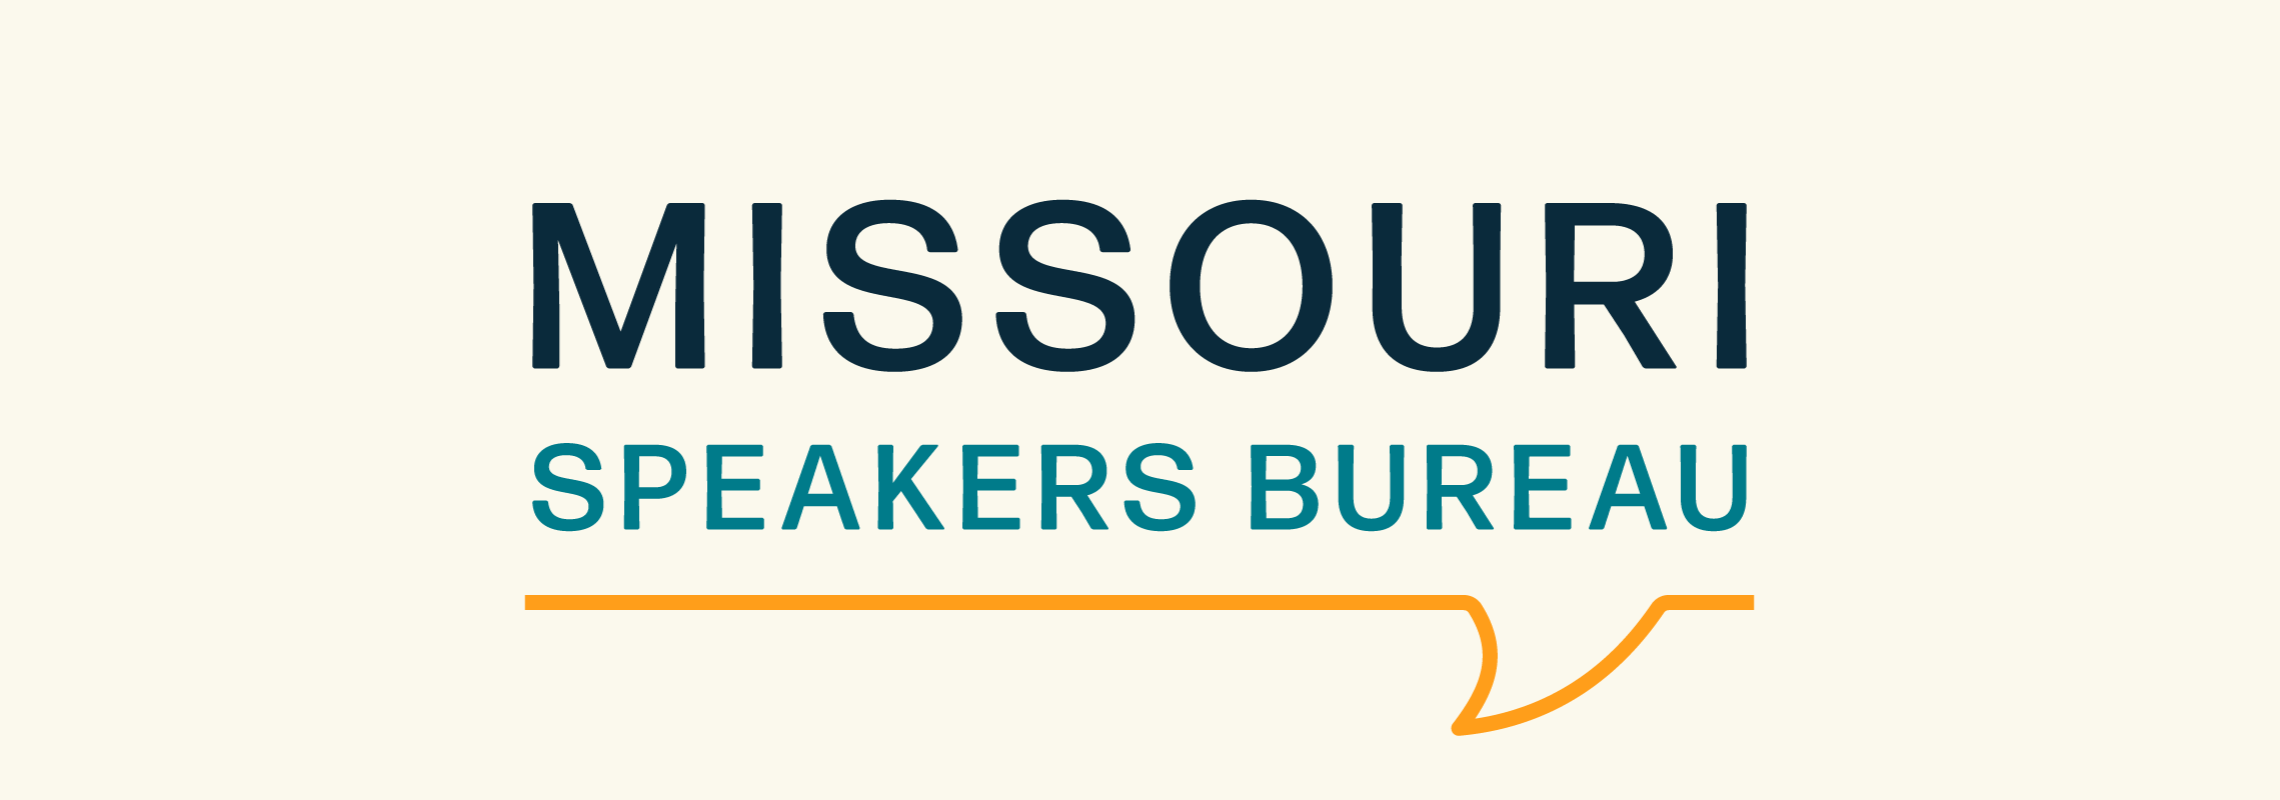 Missouri Speakers Bureau Logo